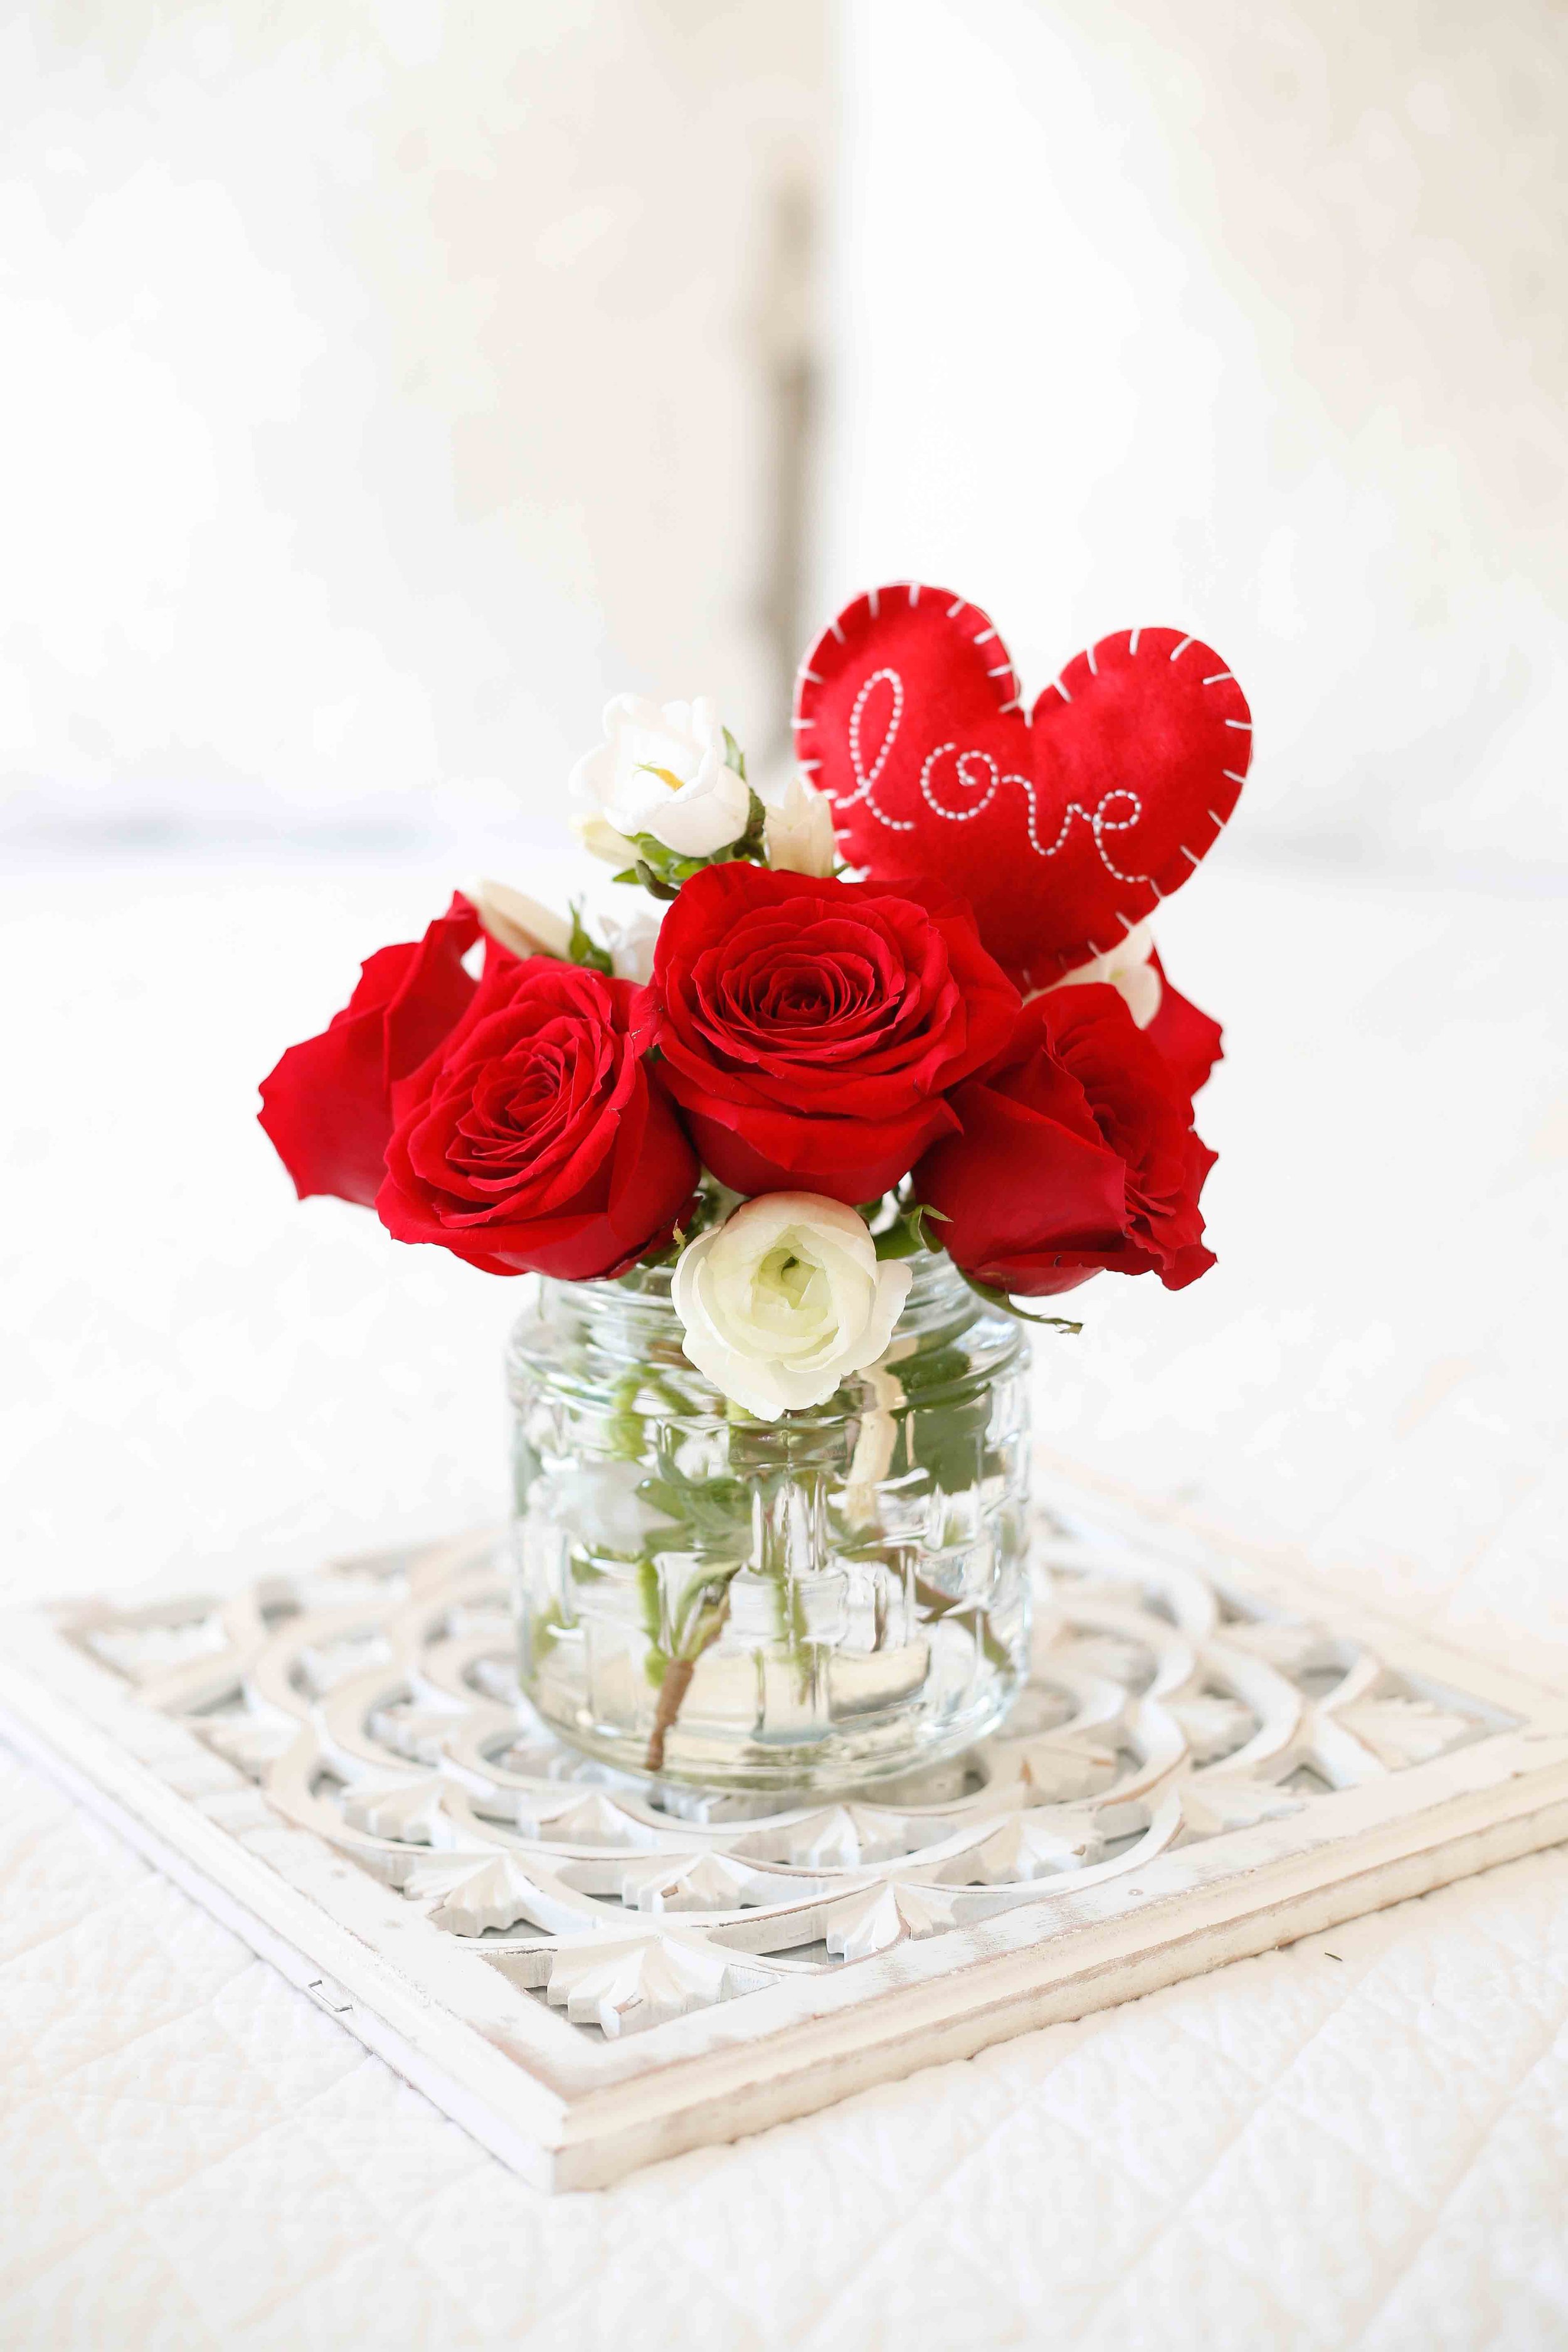 9 Valentine Gift Deliveries That Aren't Flowers - San Diego Magazine